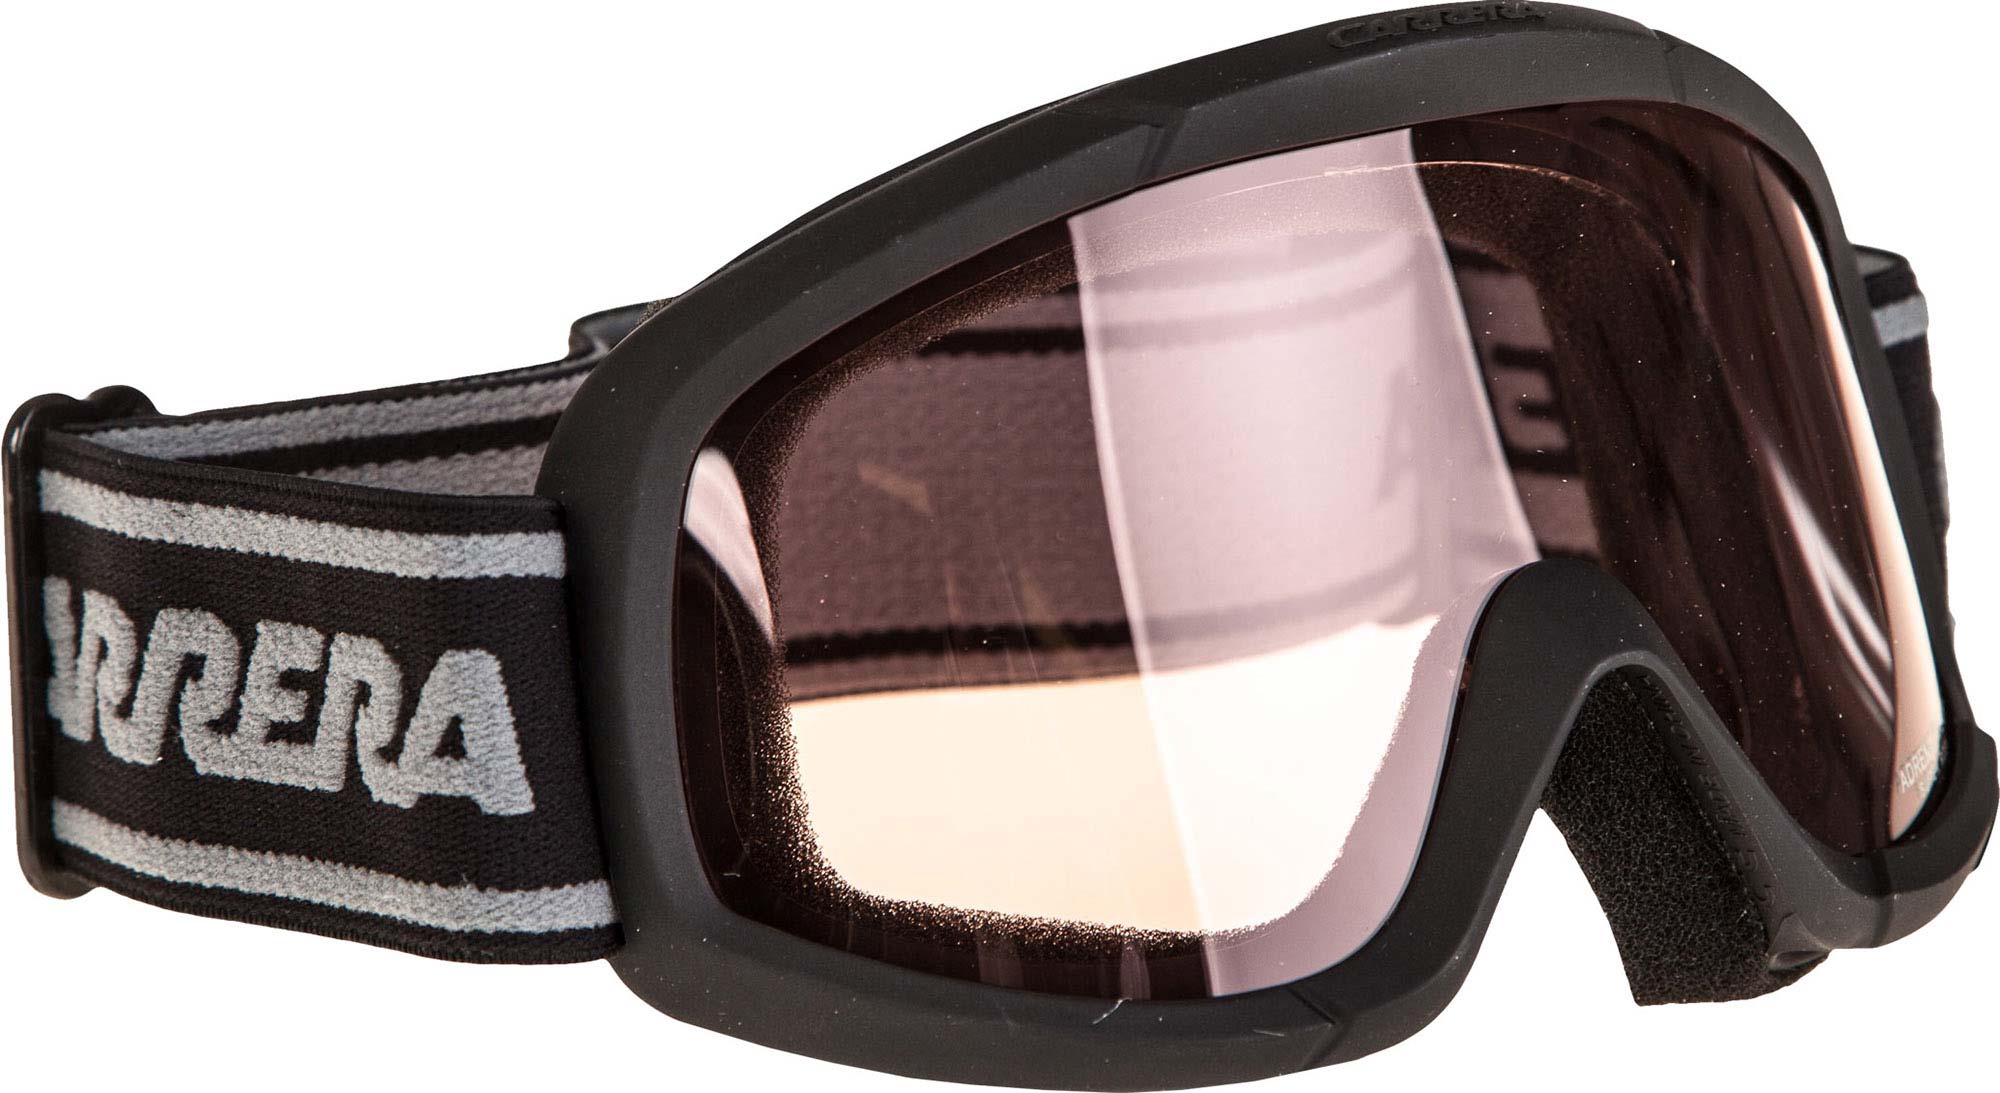 Jr. Ski Goggles